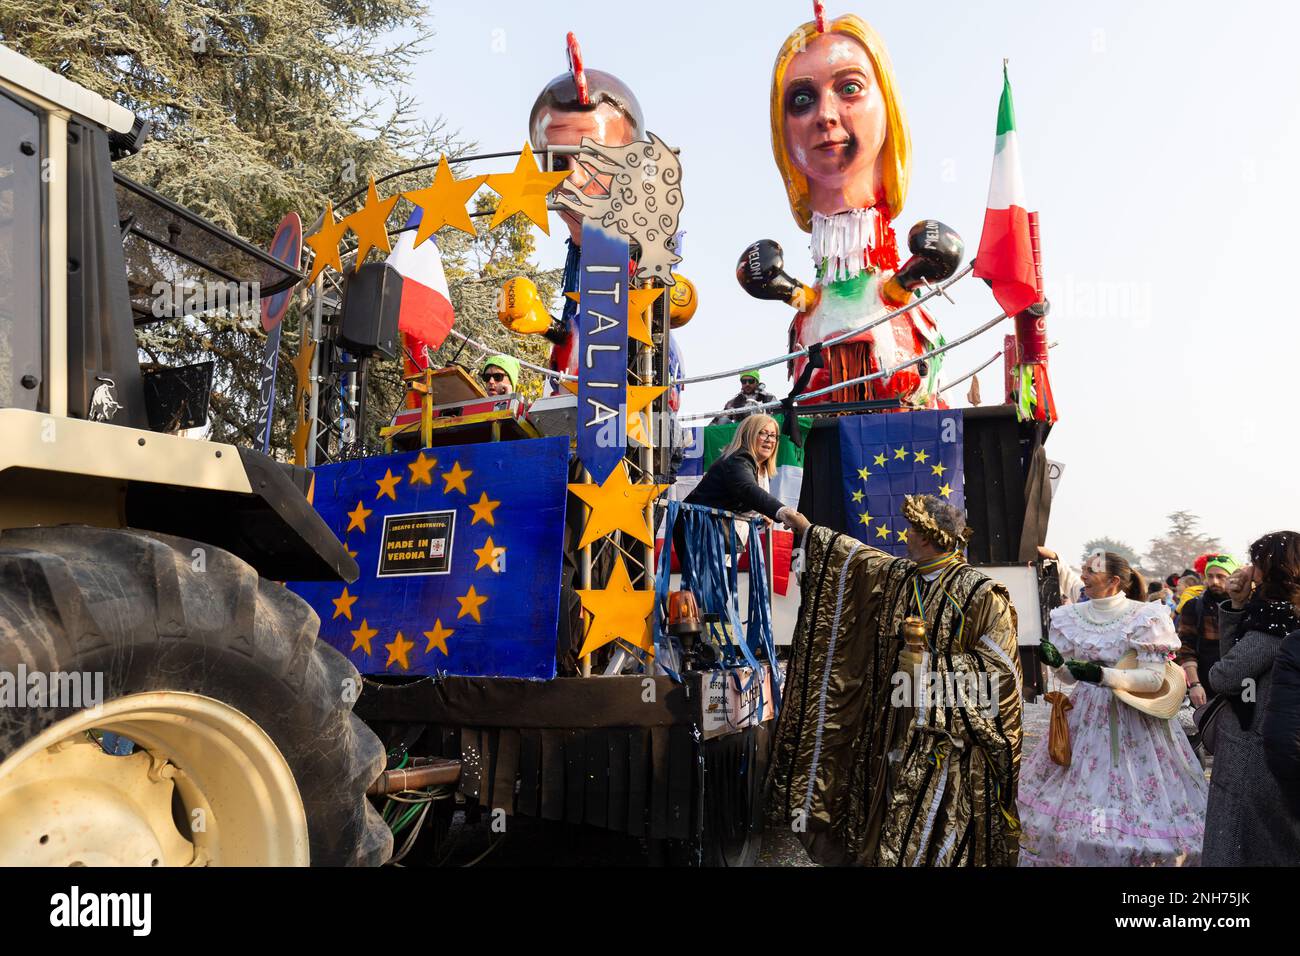 Flotteur humoristique dans le Carnaval de Domigliara, Vérone: Giorgia Meloni et Emmanuel Macron comme personnages costumés Banque D'Images